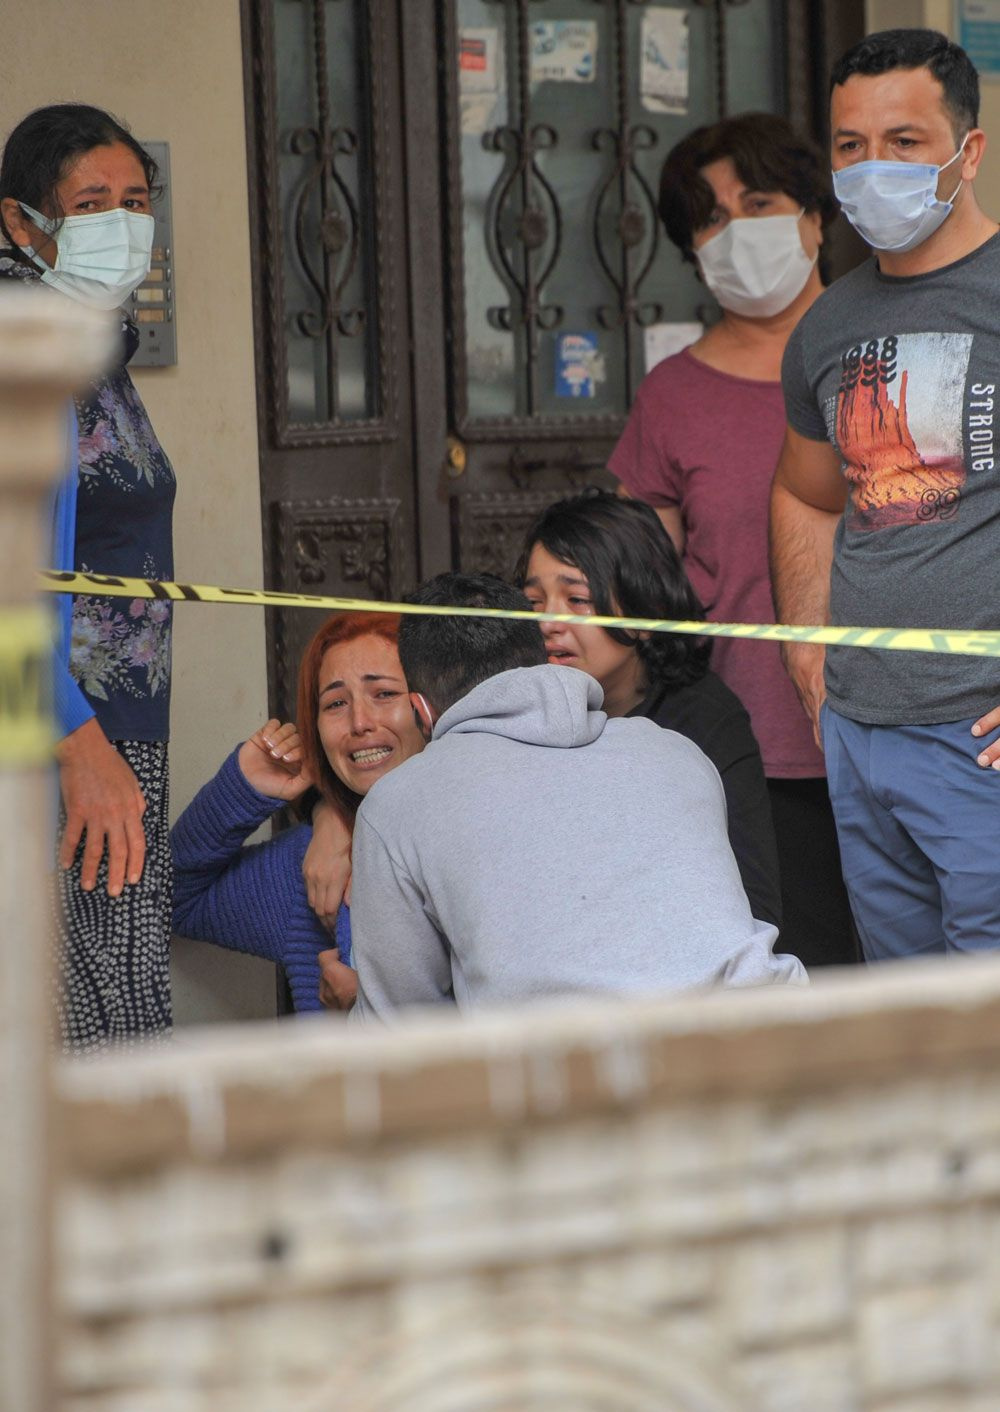 Antalya'da balkondan düşen 53 yaşındaki kadın öldü! Acı haberi alanlar kahroldu